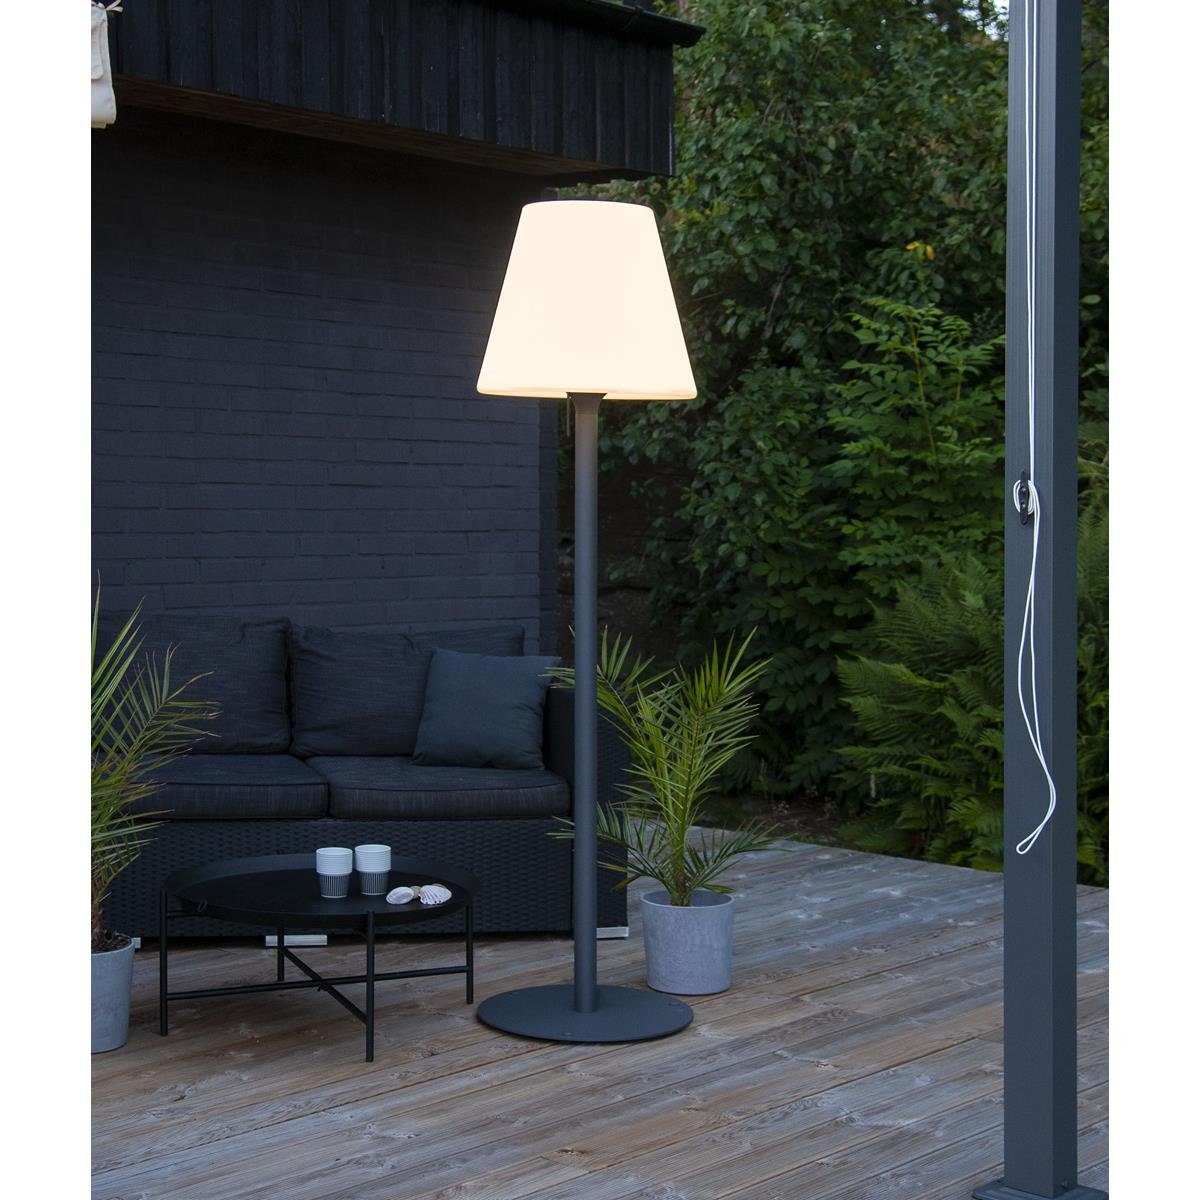 STAR TRADING LED Außen-Stehlampe Garten Beistelllampe/Stehlampe - H: 187cm  - weißer Schirm, D: 50cm - E27 Fassung